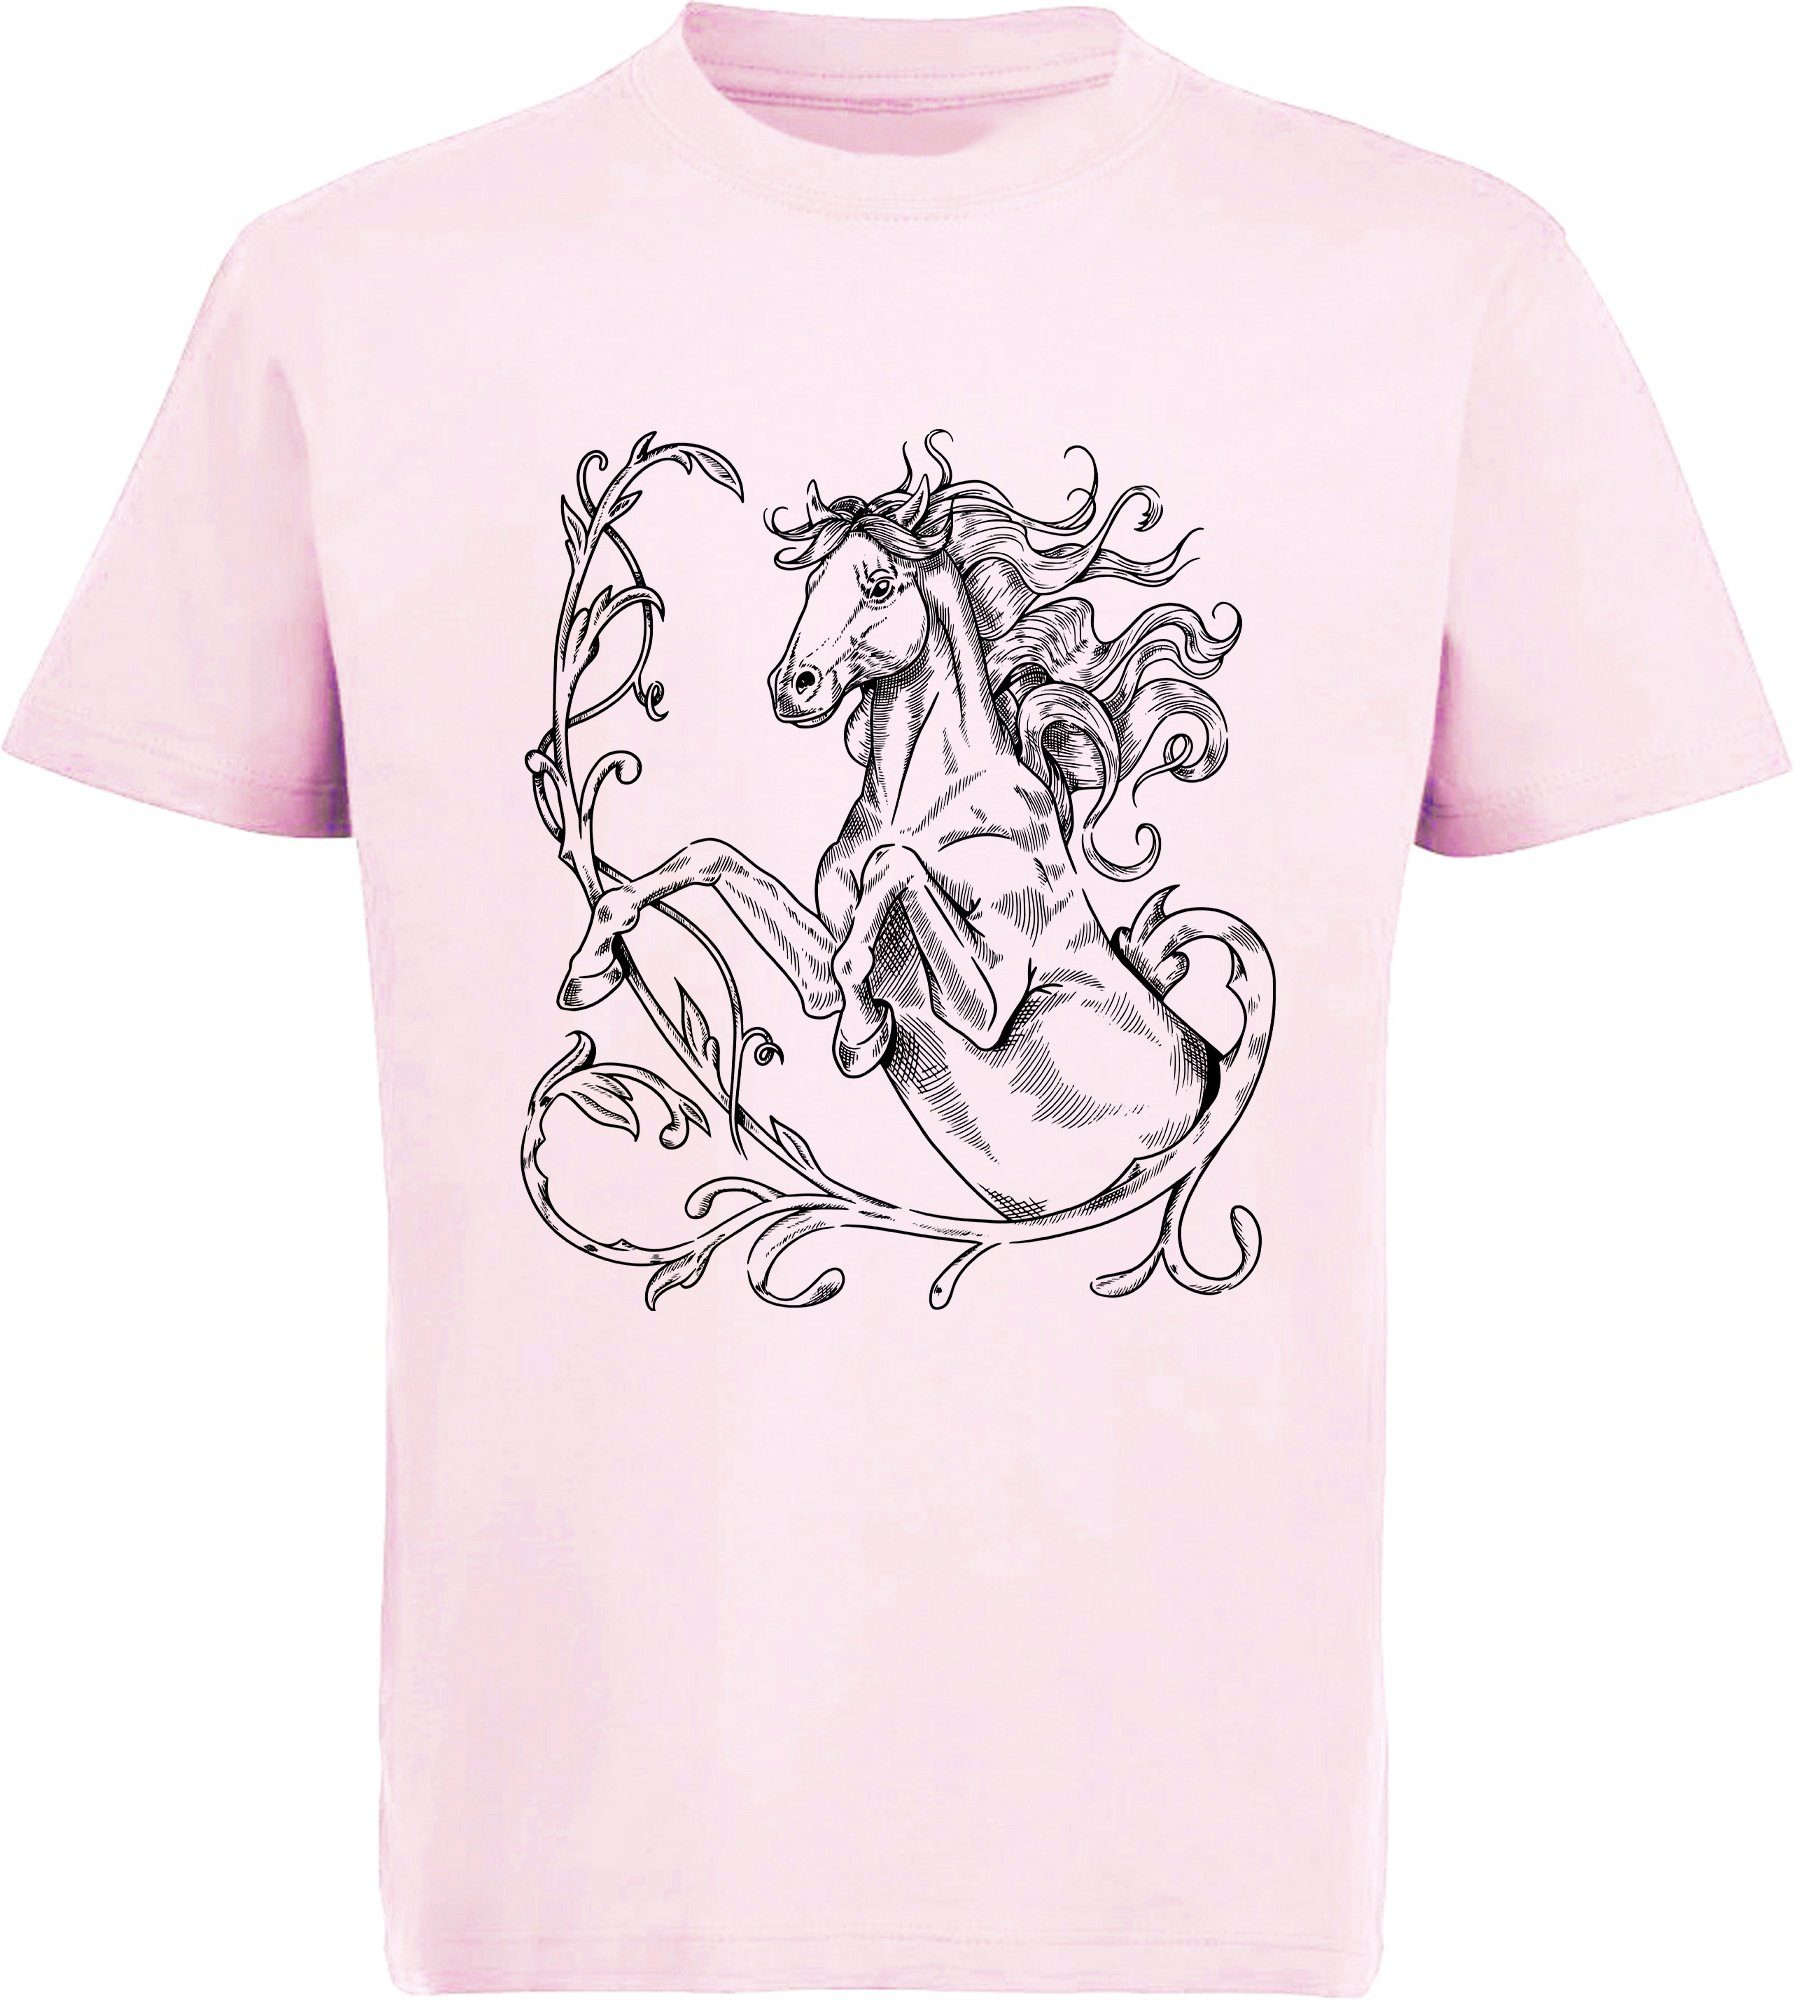 MyDesign24 Print-Shirt bedrucktes Mädchen T-Shirt Aufdruck, Baumwollshirt Silhouette i146 stehende mit Pferde rosa